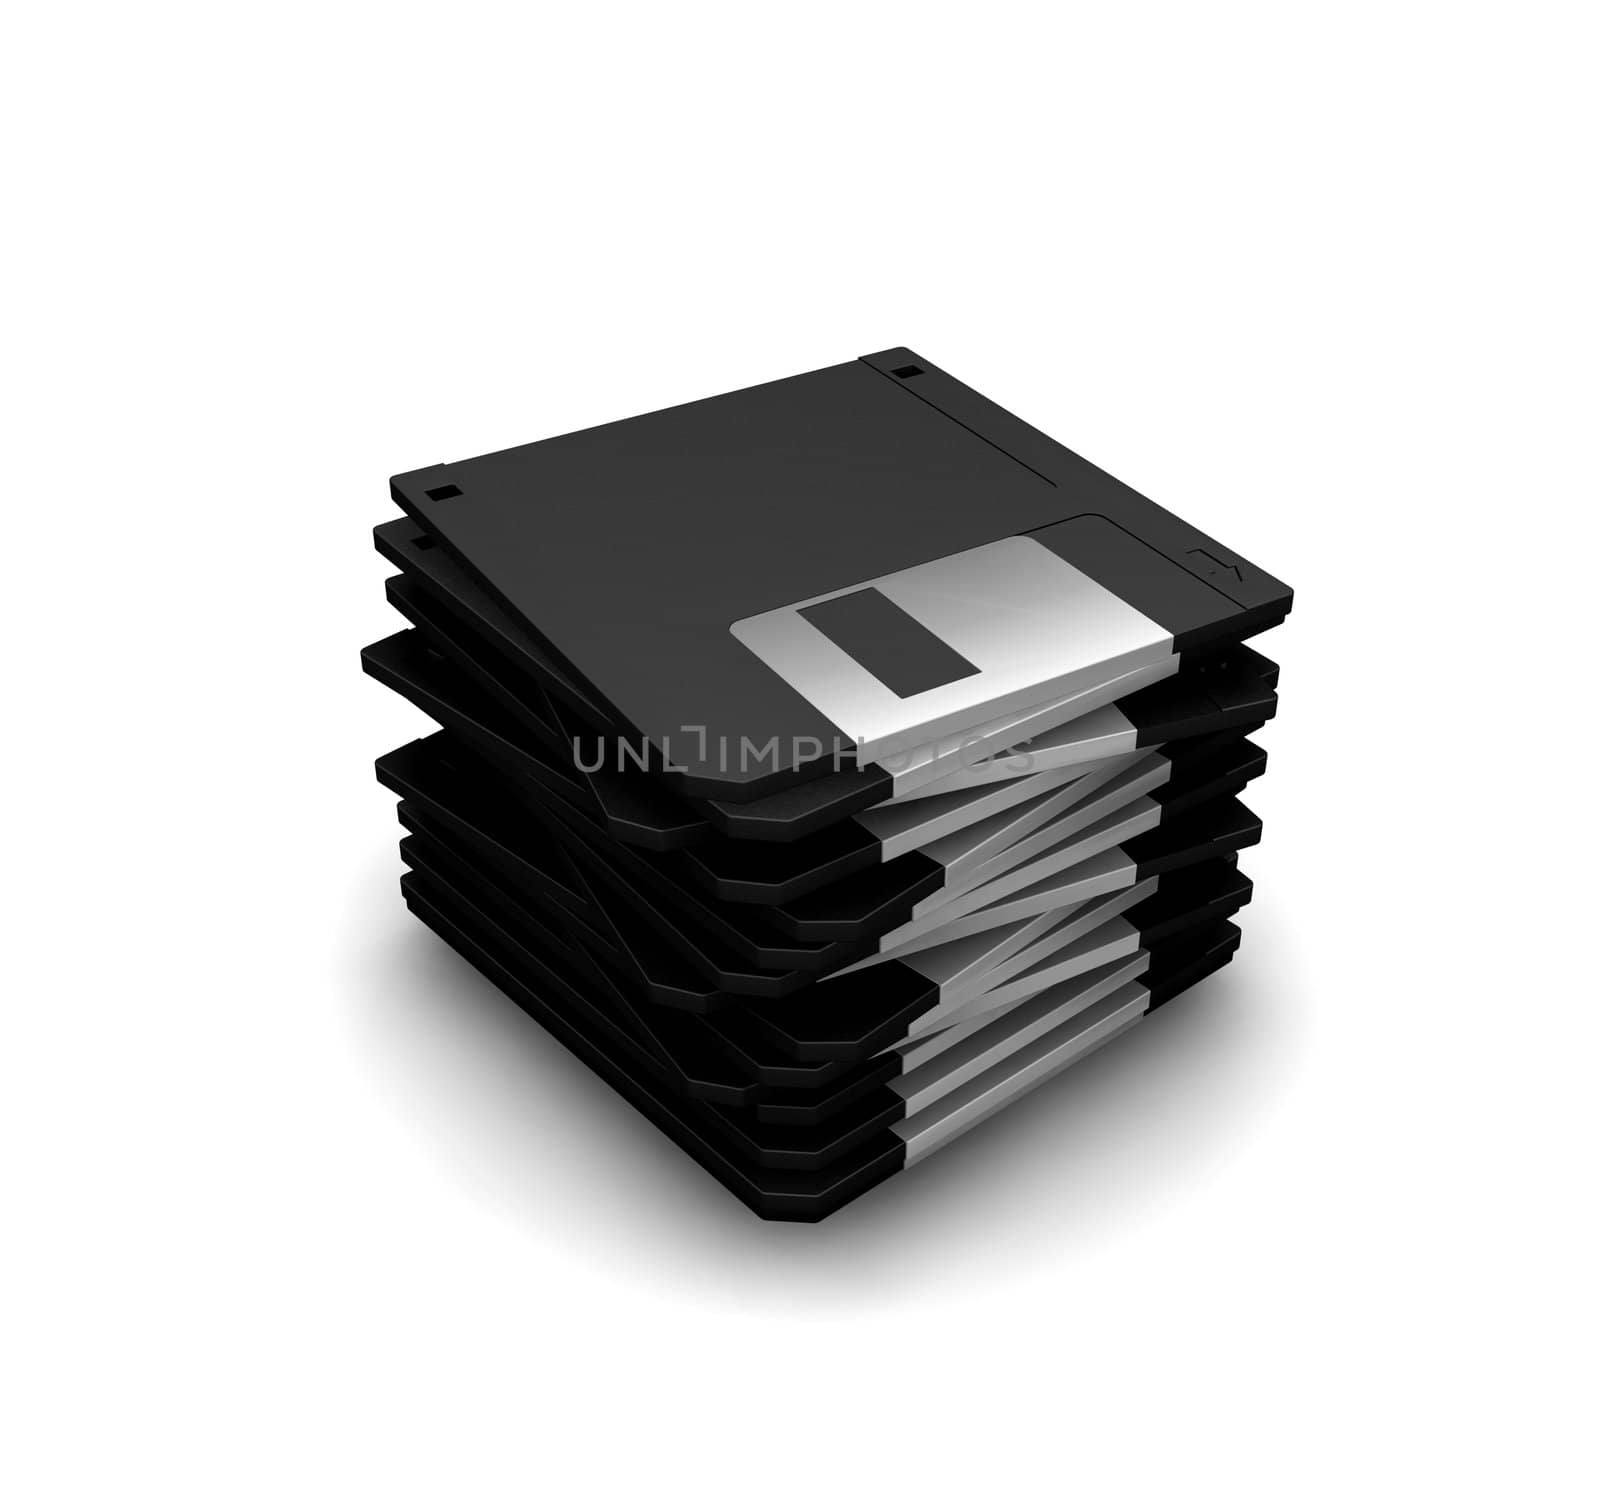 3D render of a stack of floppy disks